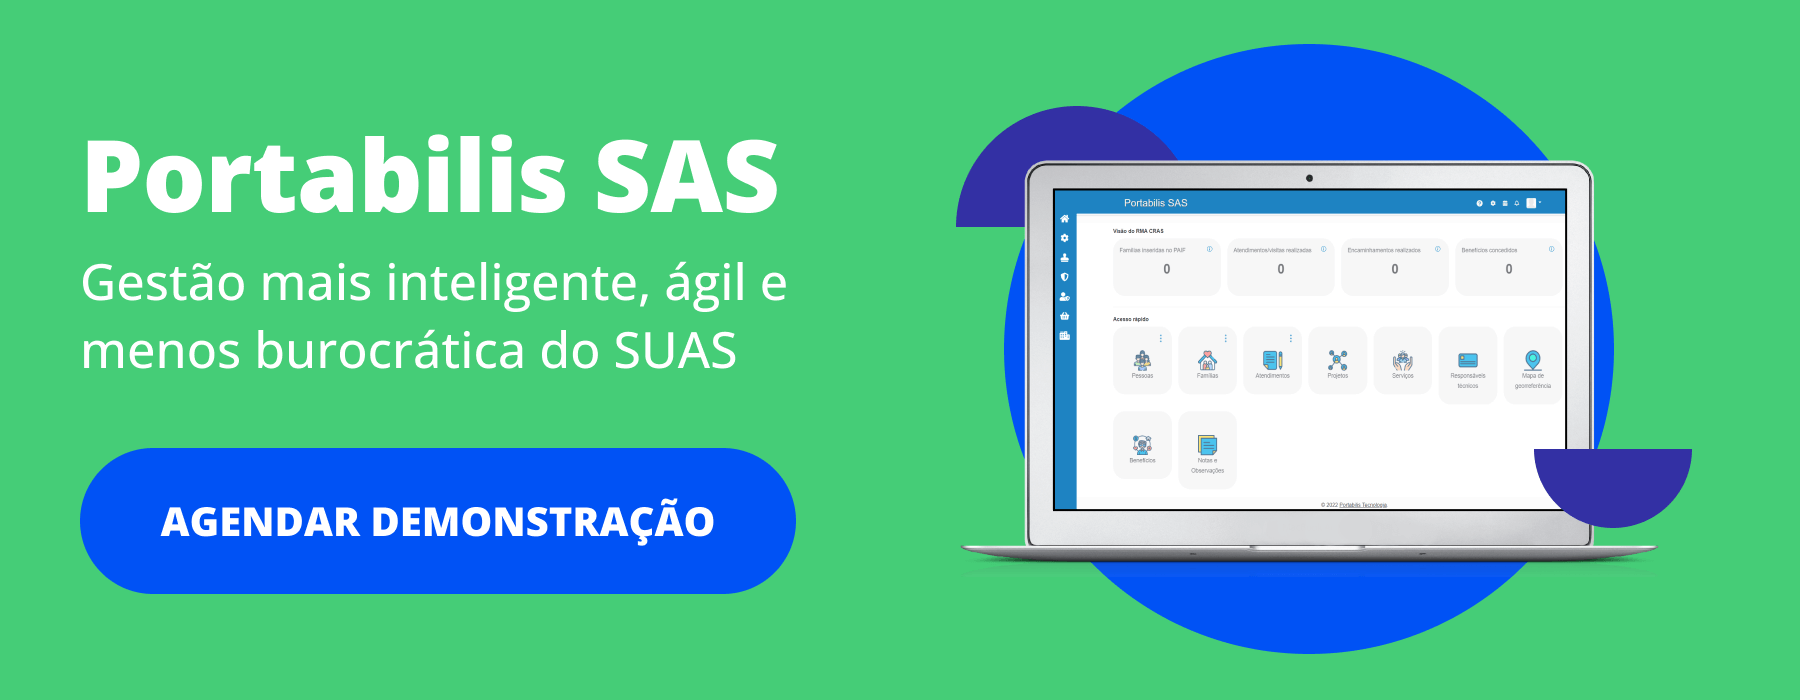 Portabilis SAS: software para Assistência Social e gestão do SUAS nos municípios.